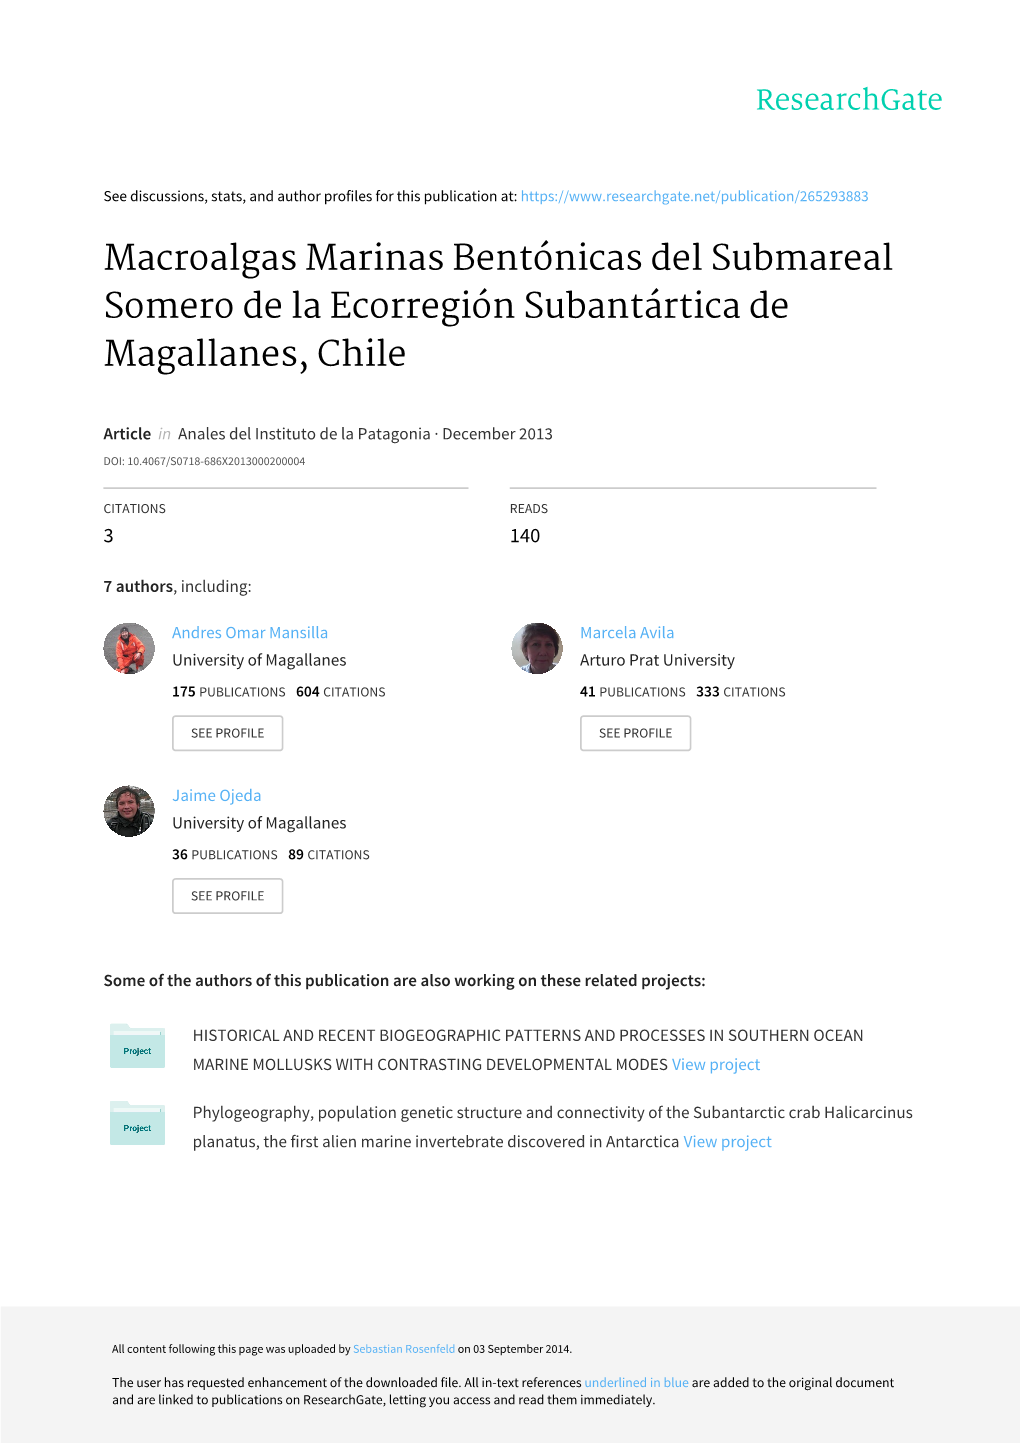 Macroalgas Marinas Bentónicas Del Submareal Somero De La Ecorregión Subantártica De Magallanes, Chile